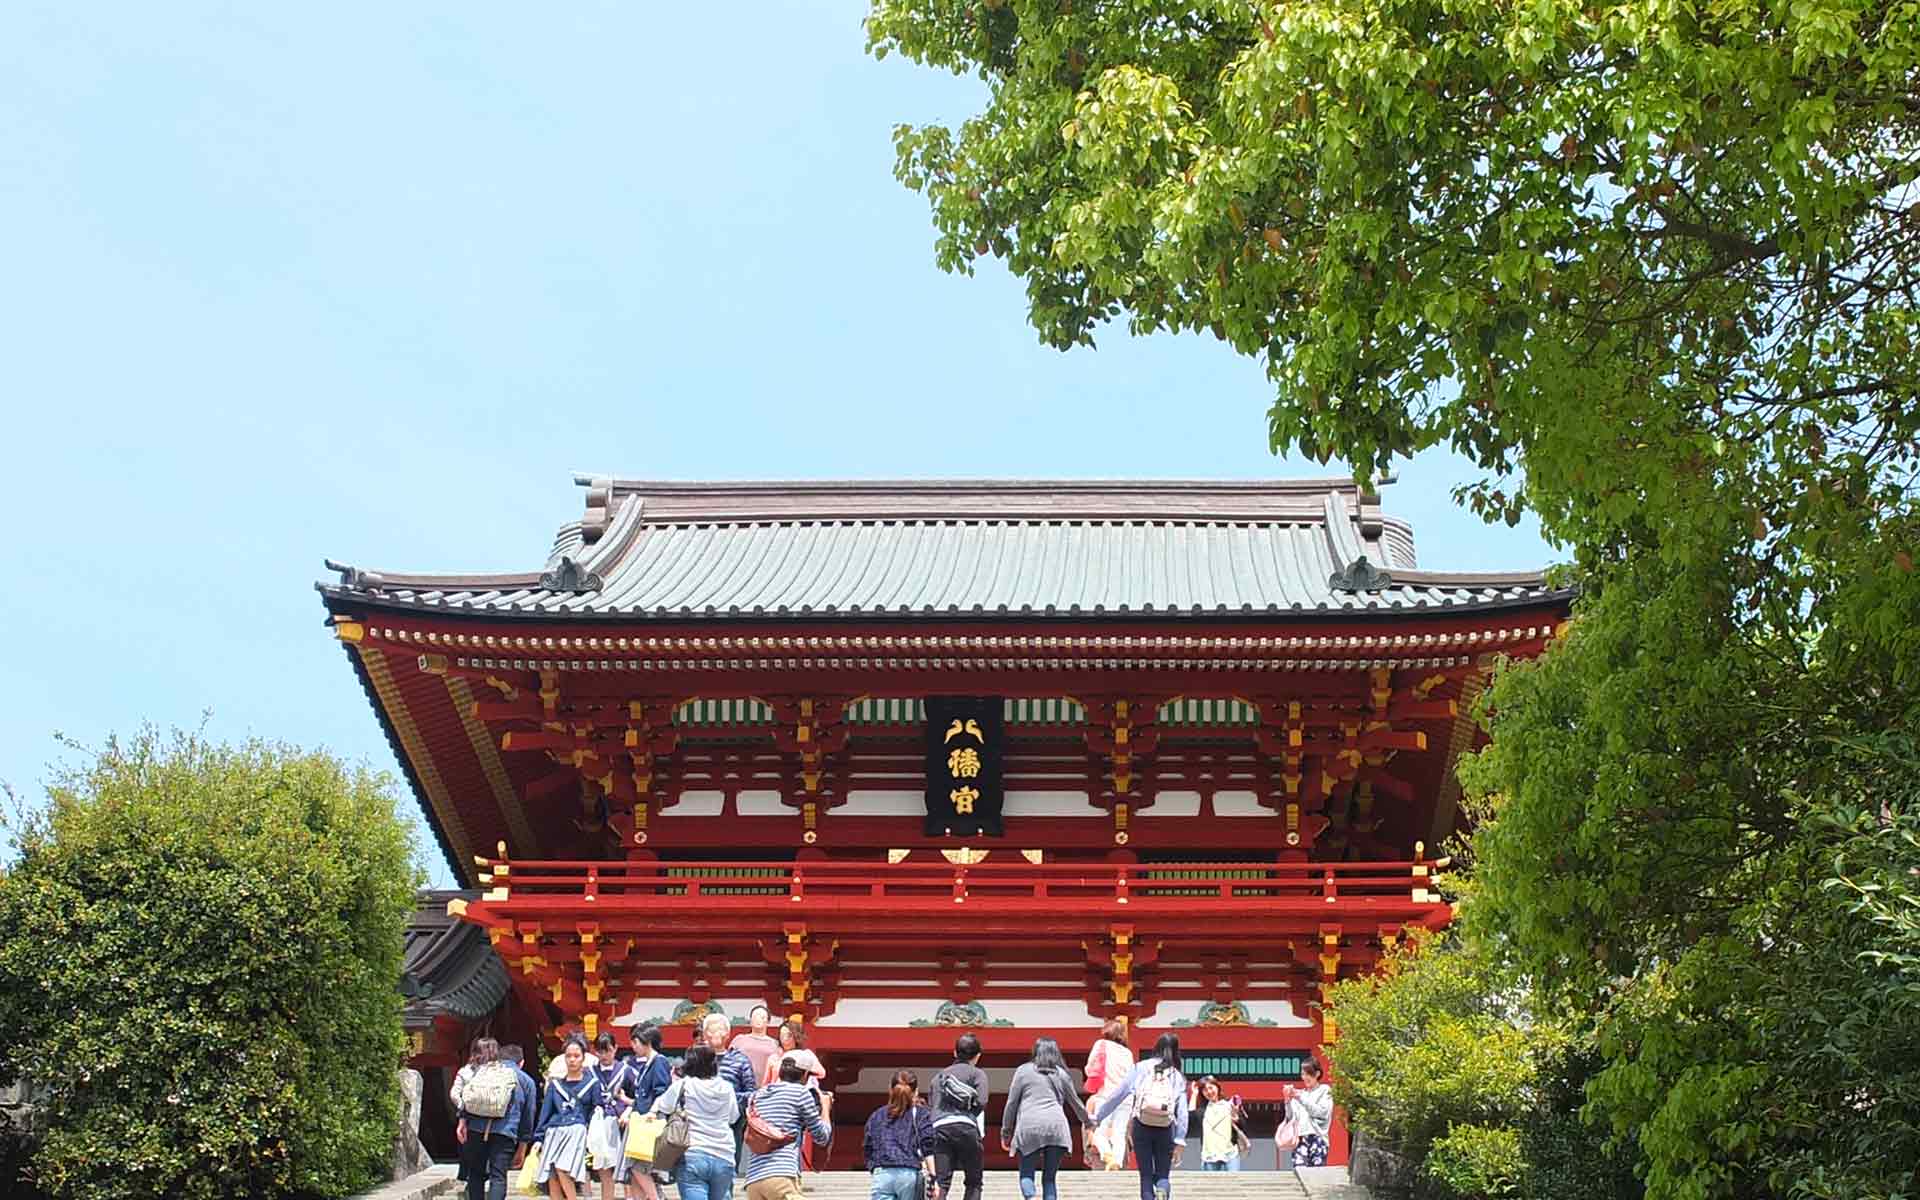 なぜ鎌倉の鶴岡八幡宮には鳩が多いのか。シンボルになった鳩の秘密